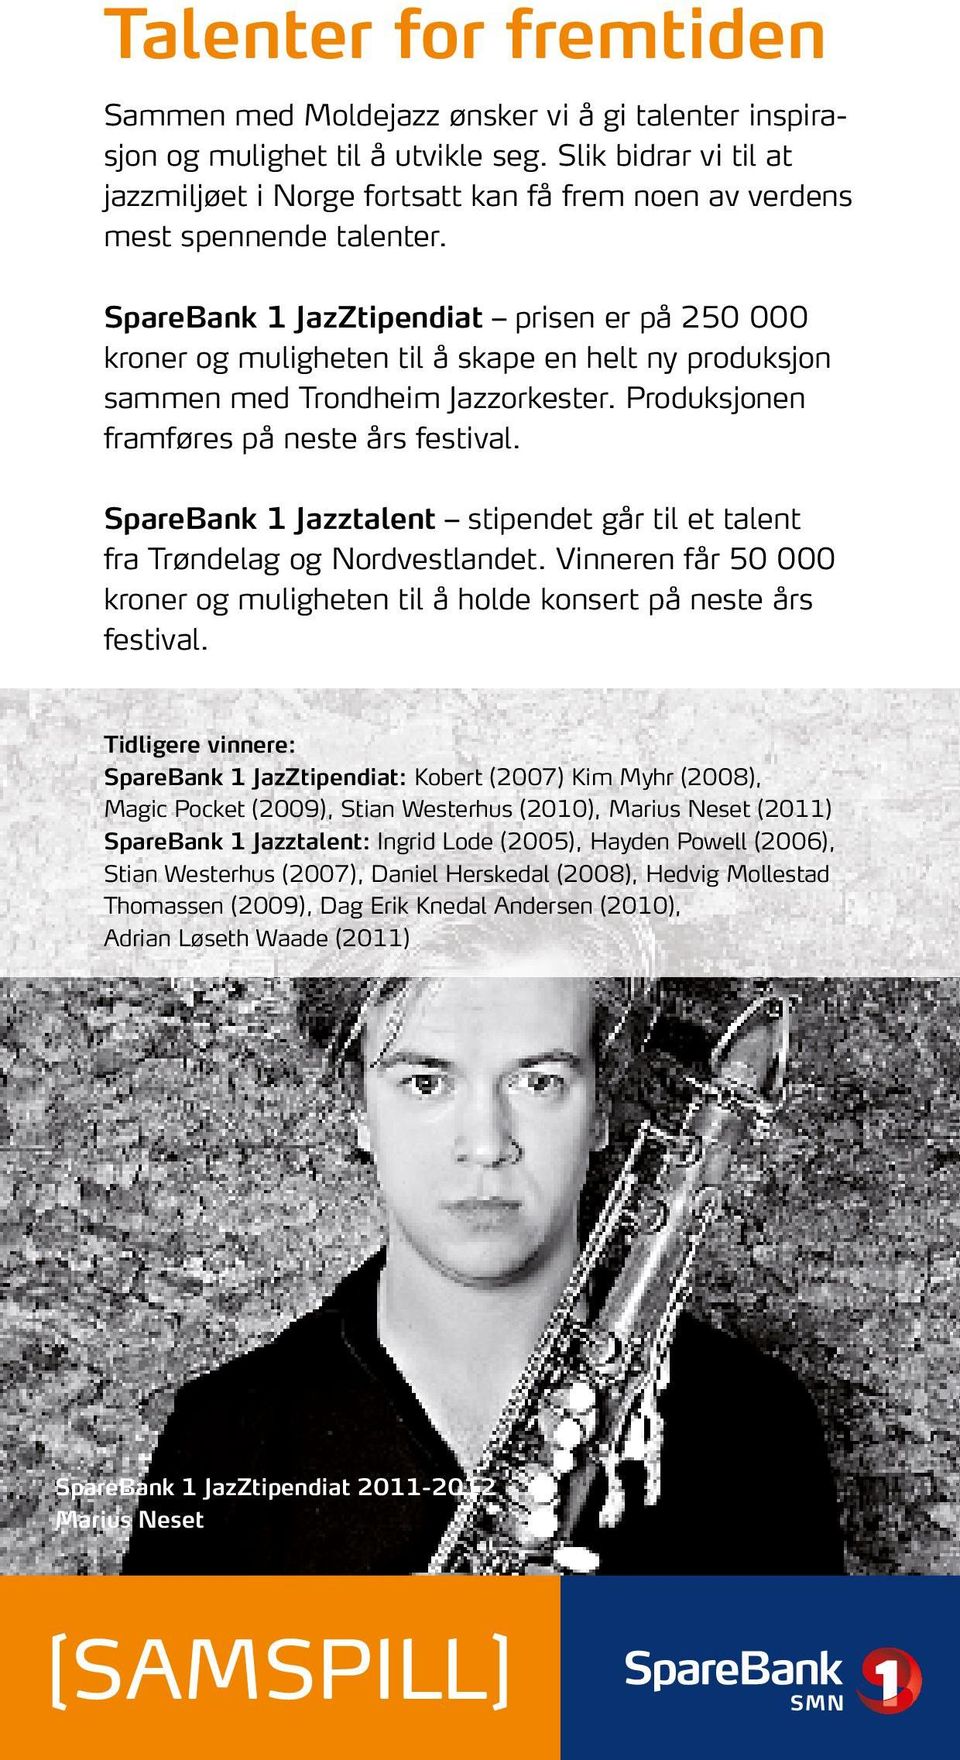 SpareBank 1 JazZtipendiat prisen er på 250 000 kroner og muligheten til å skape en helt ny produksjon sammen med Trondheim Jazzorkester. Produksjonen framføres på neste års festival.